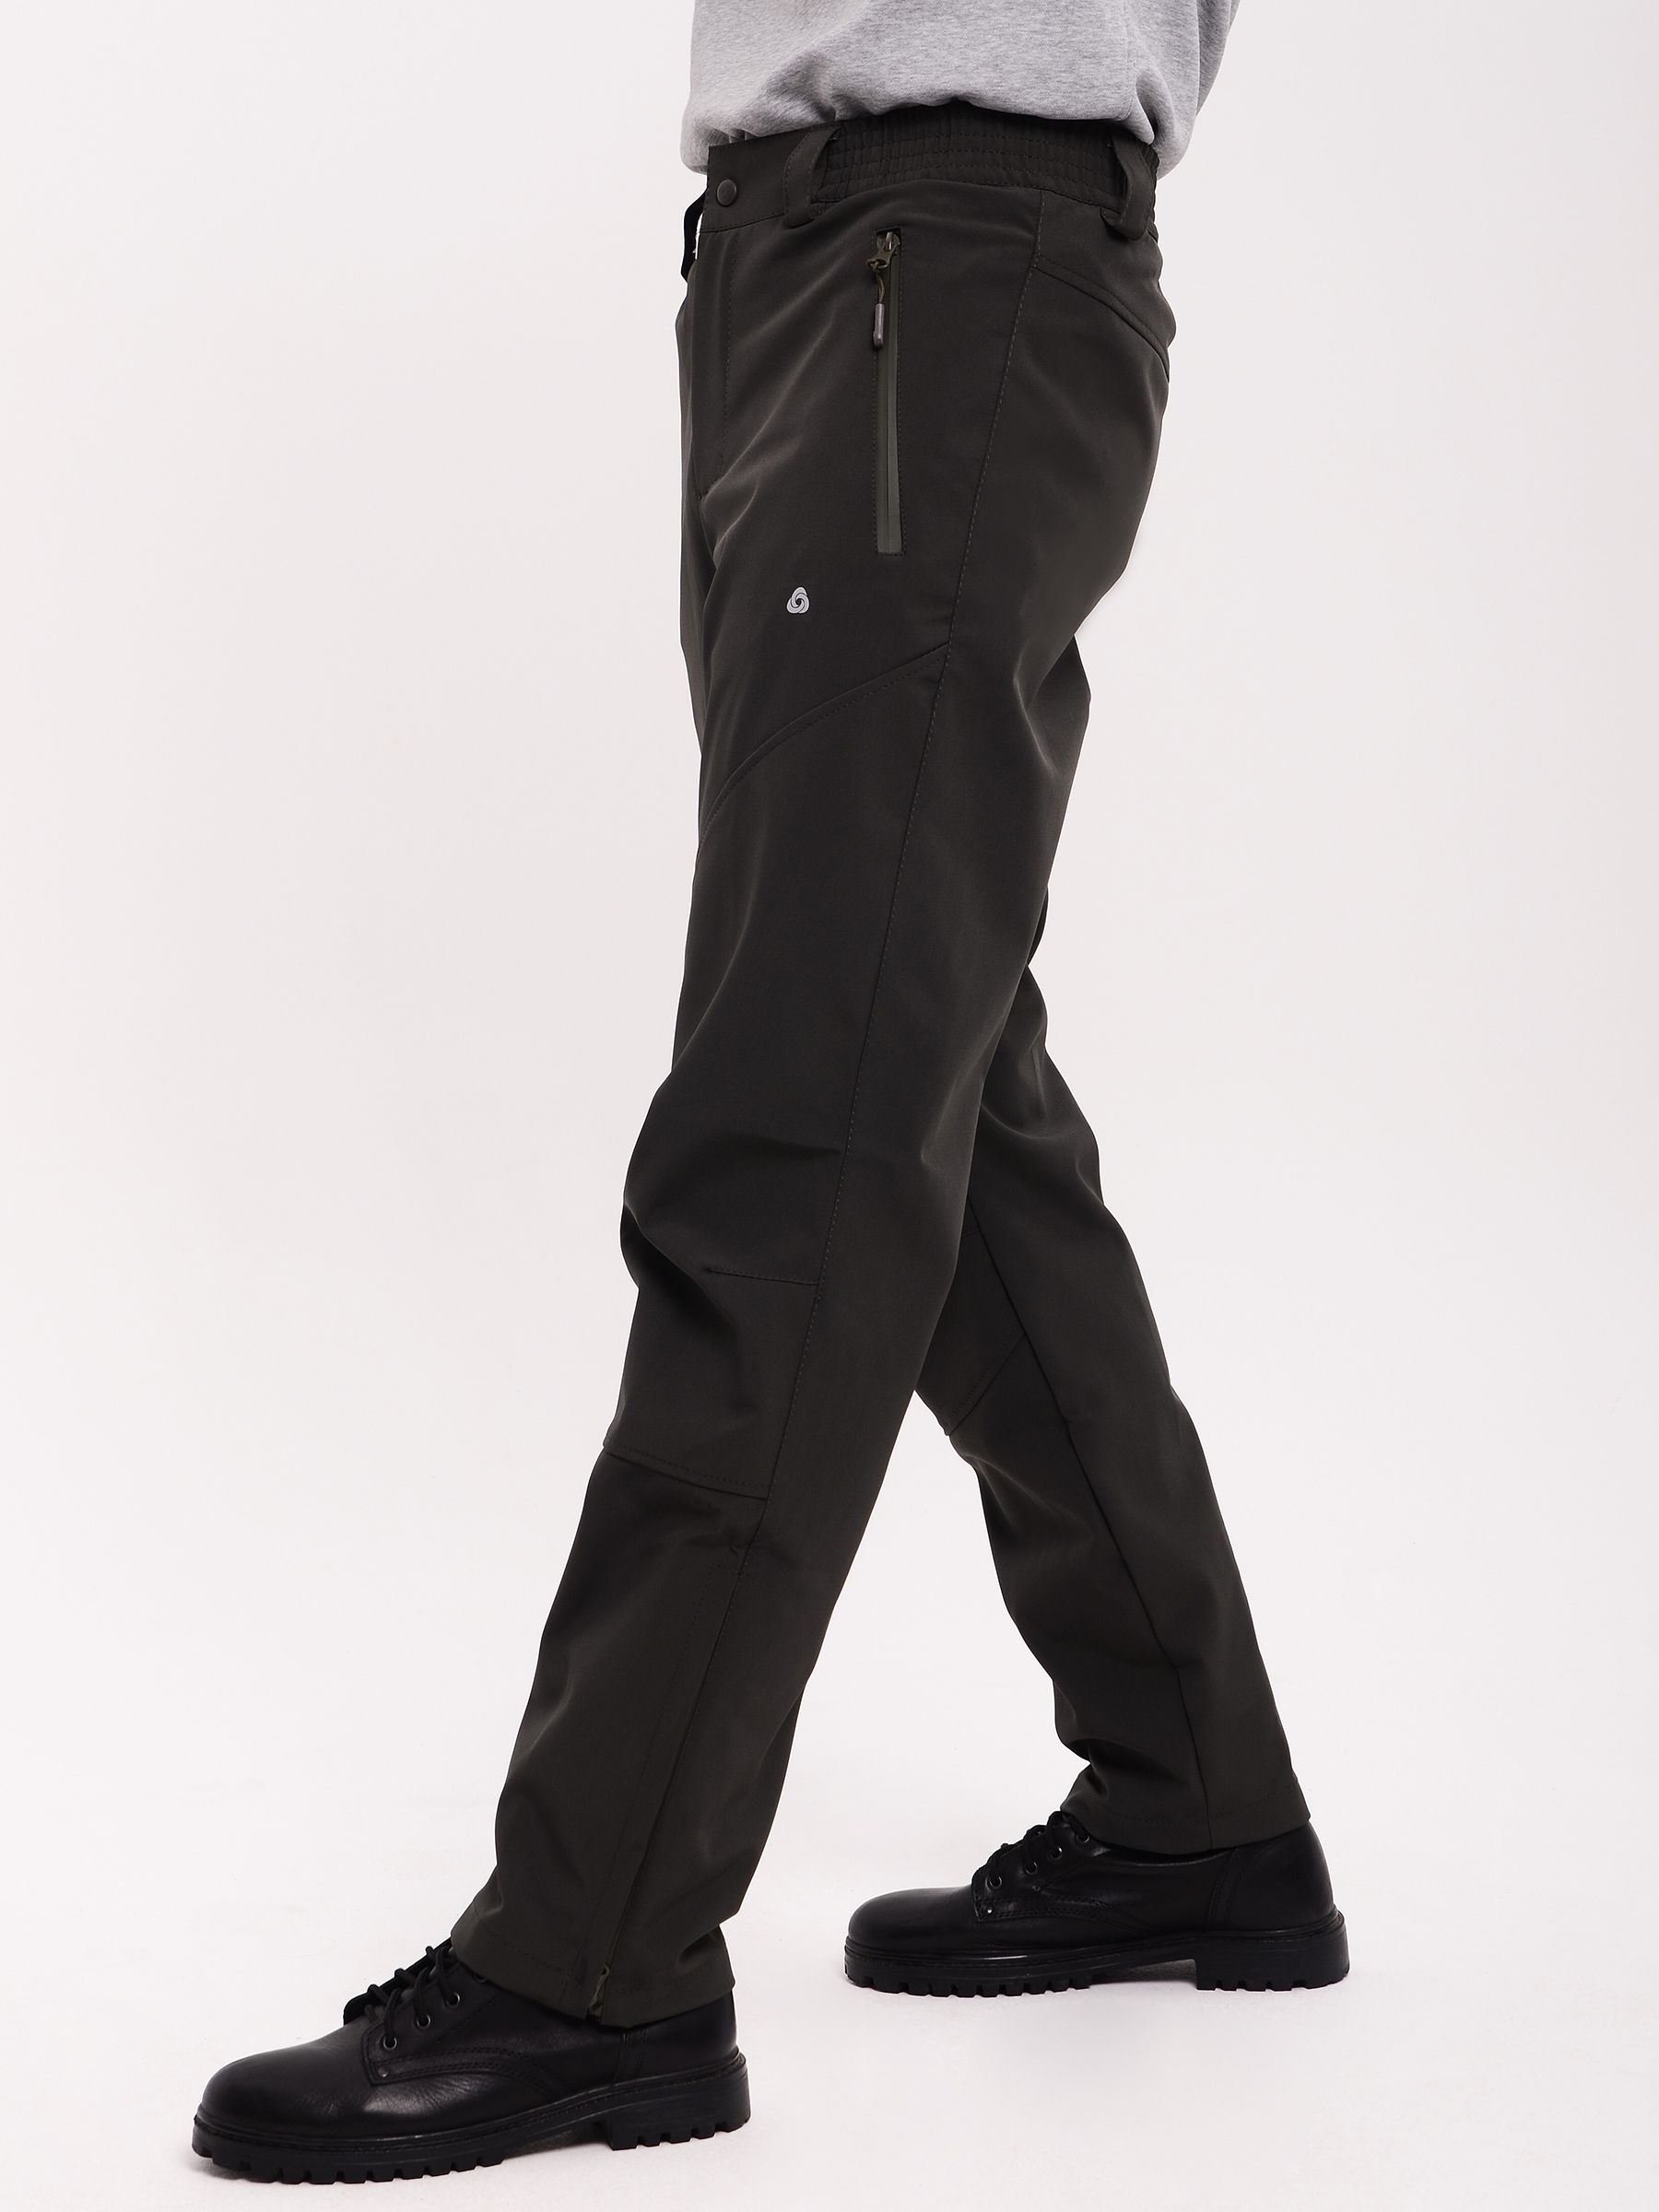 Демисезонные мужские мембранные брюки Софтшелл, цвет хаки из мембраннойткани